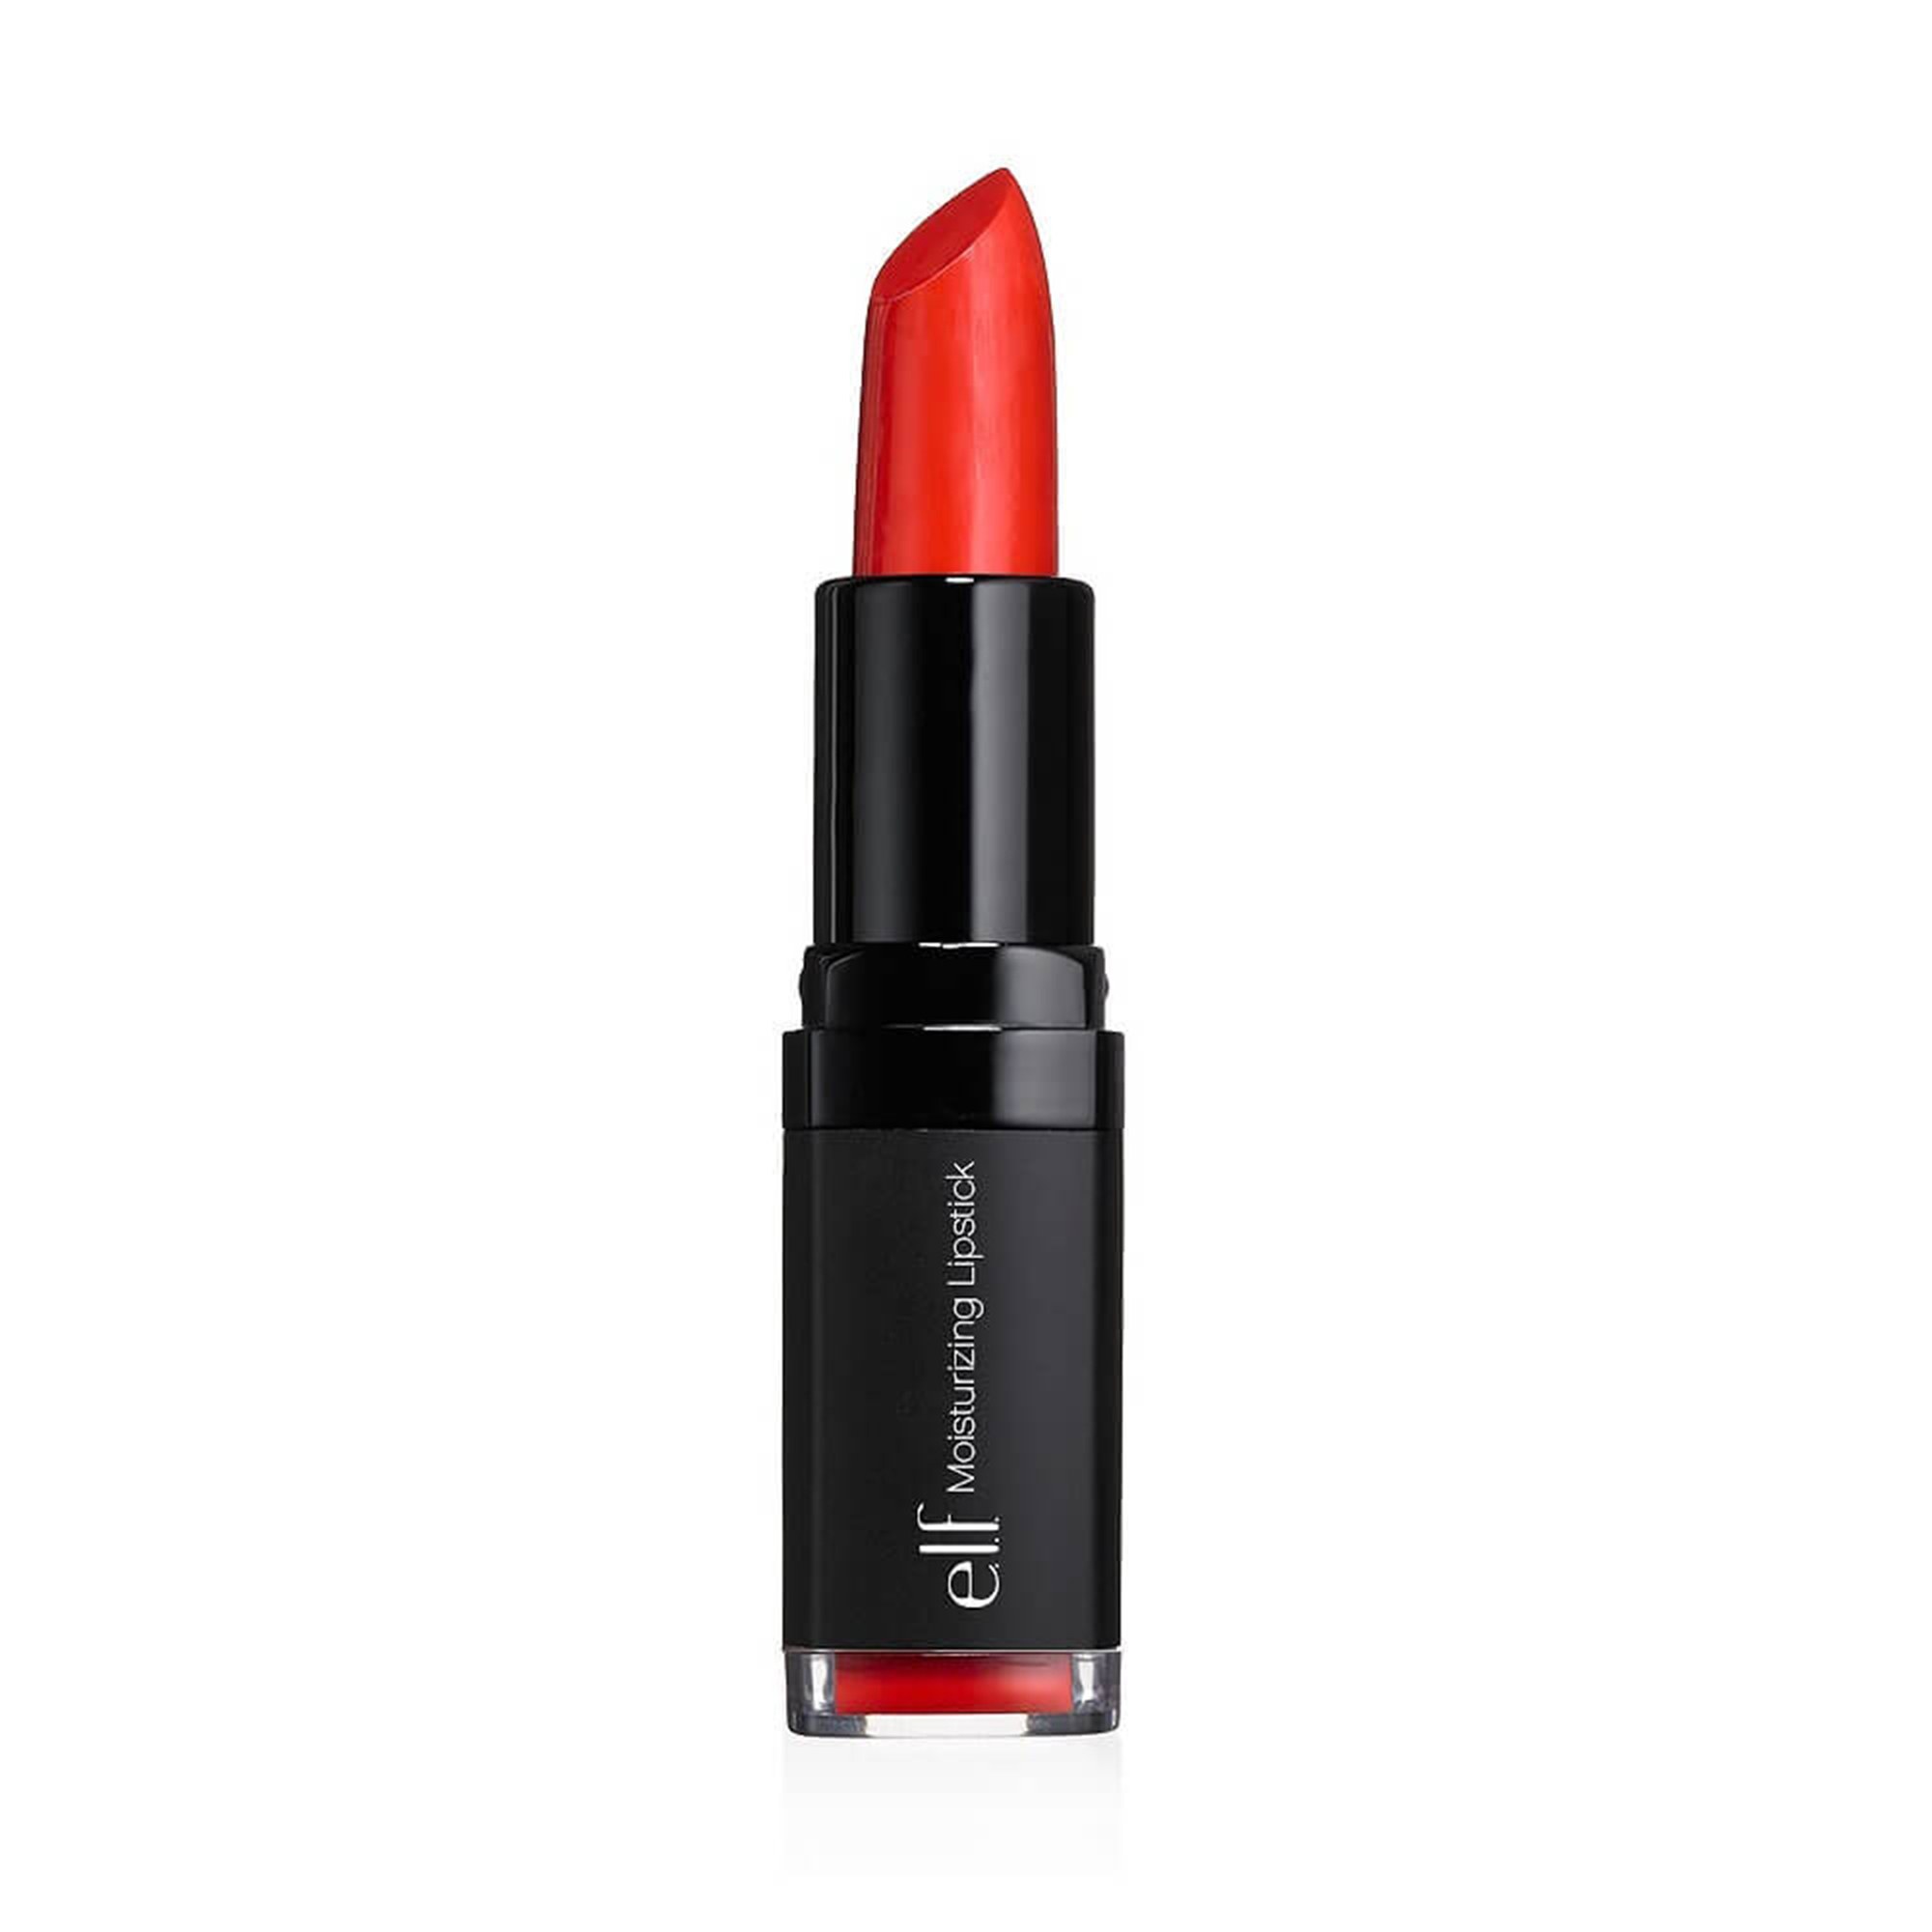 E.L.F. Moisturizing Lipstick in Velvet Rope Review | Allure